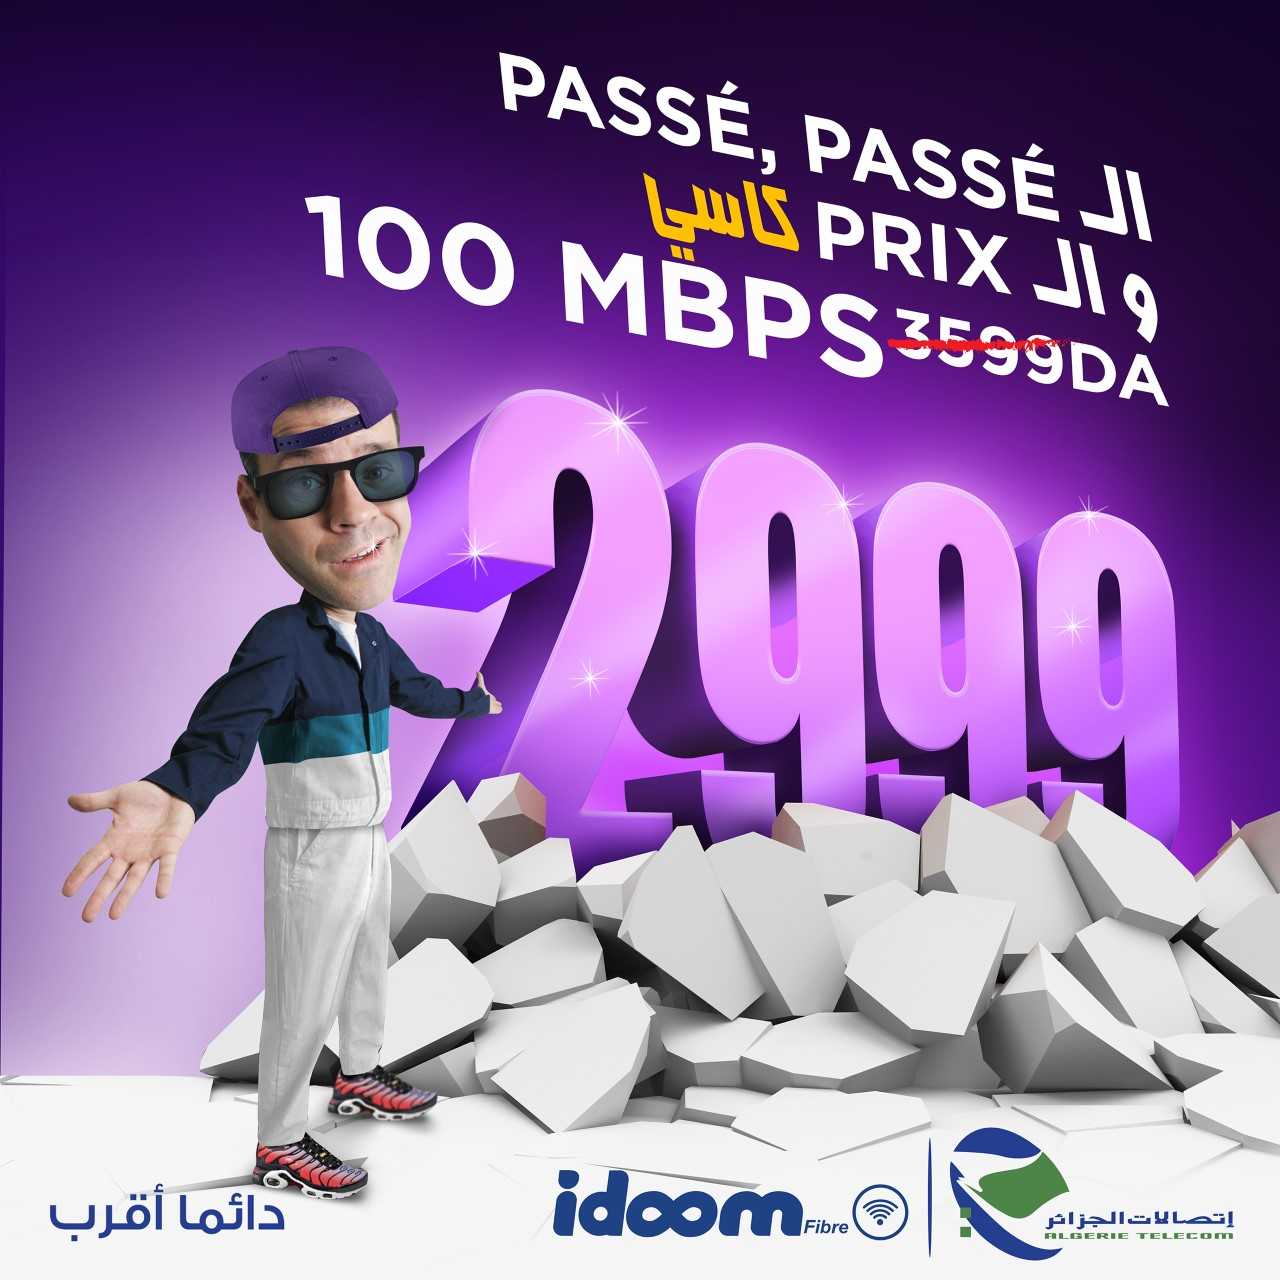 Idoom Fibre : Algérie Télécom annonce une nouvelle offre